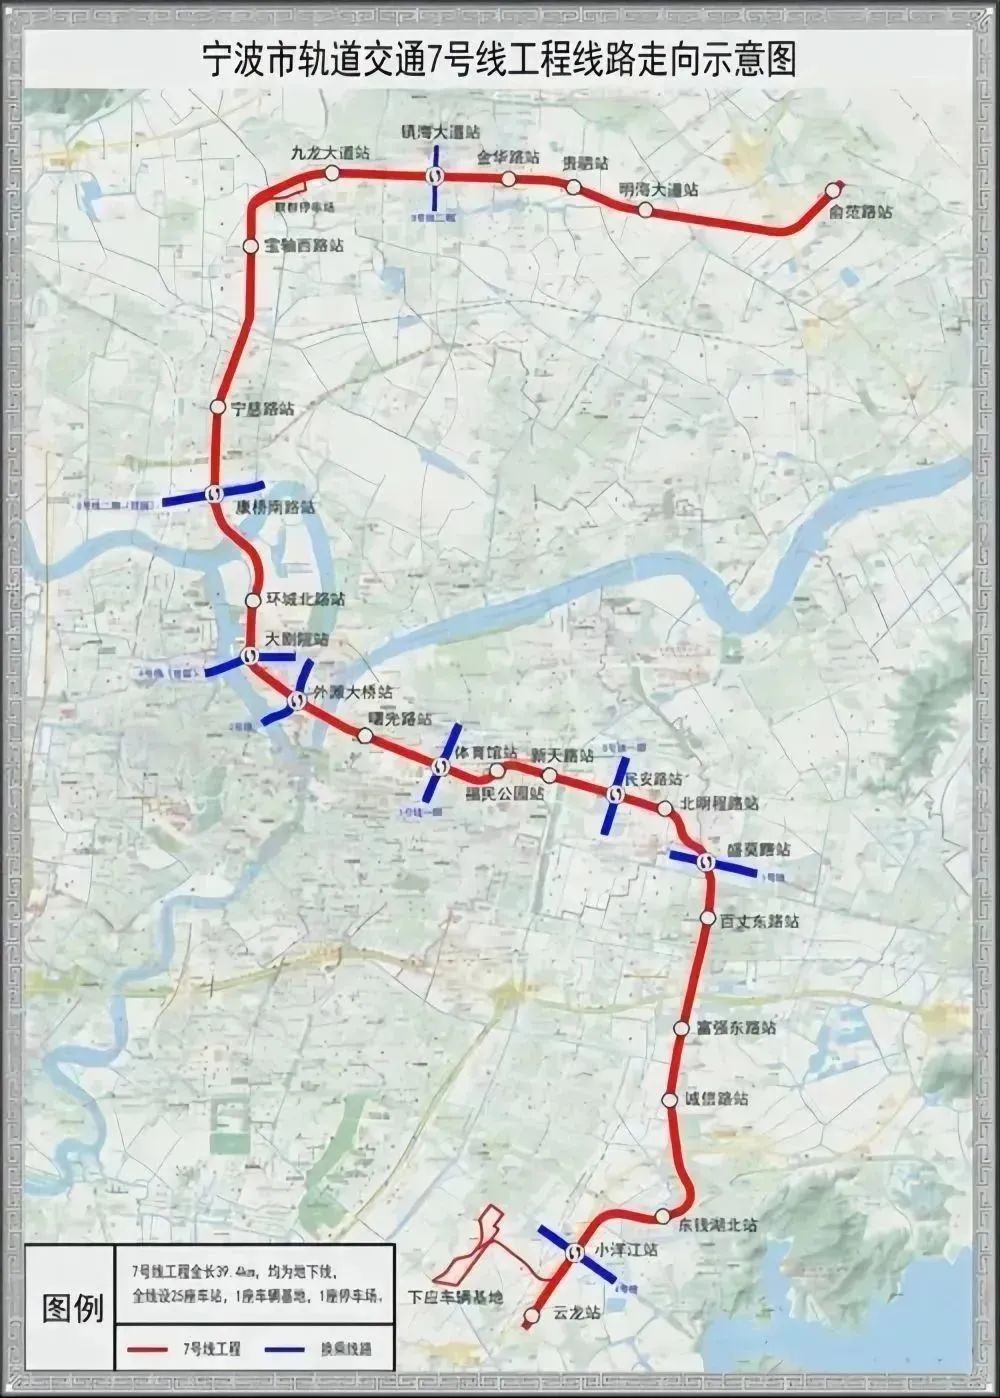 宁波市轨道交通7号线工程线路示意图